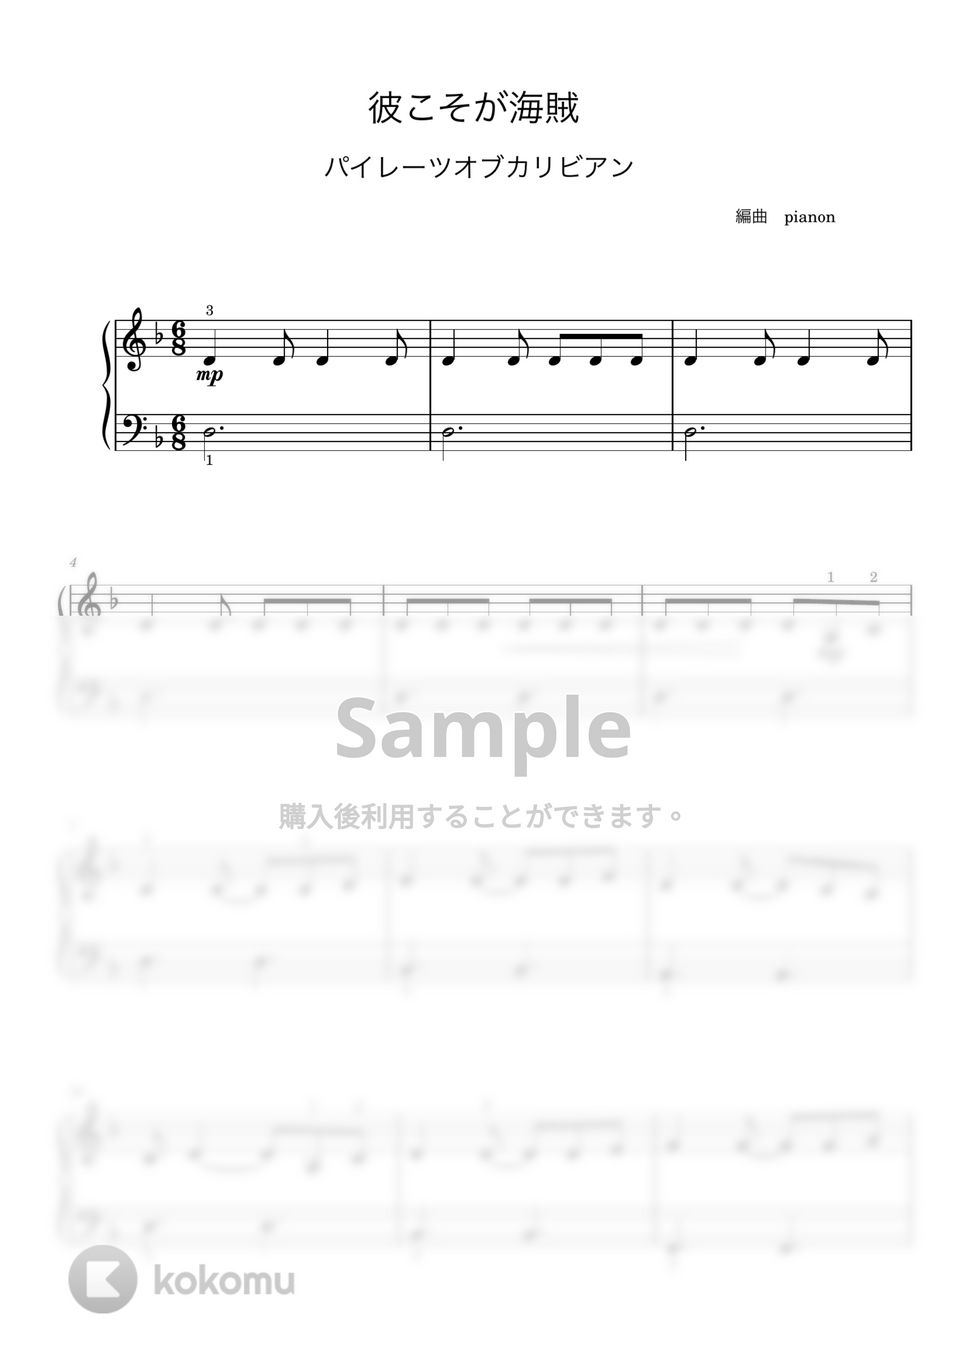 ハンス・ジマー - 彼こそが海賊 (ピアノ入門ソロ) by pianon